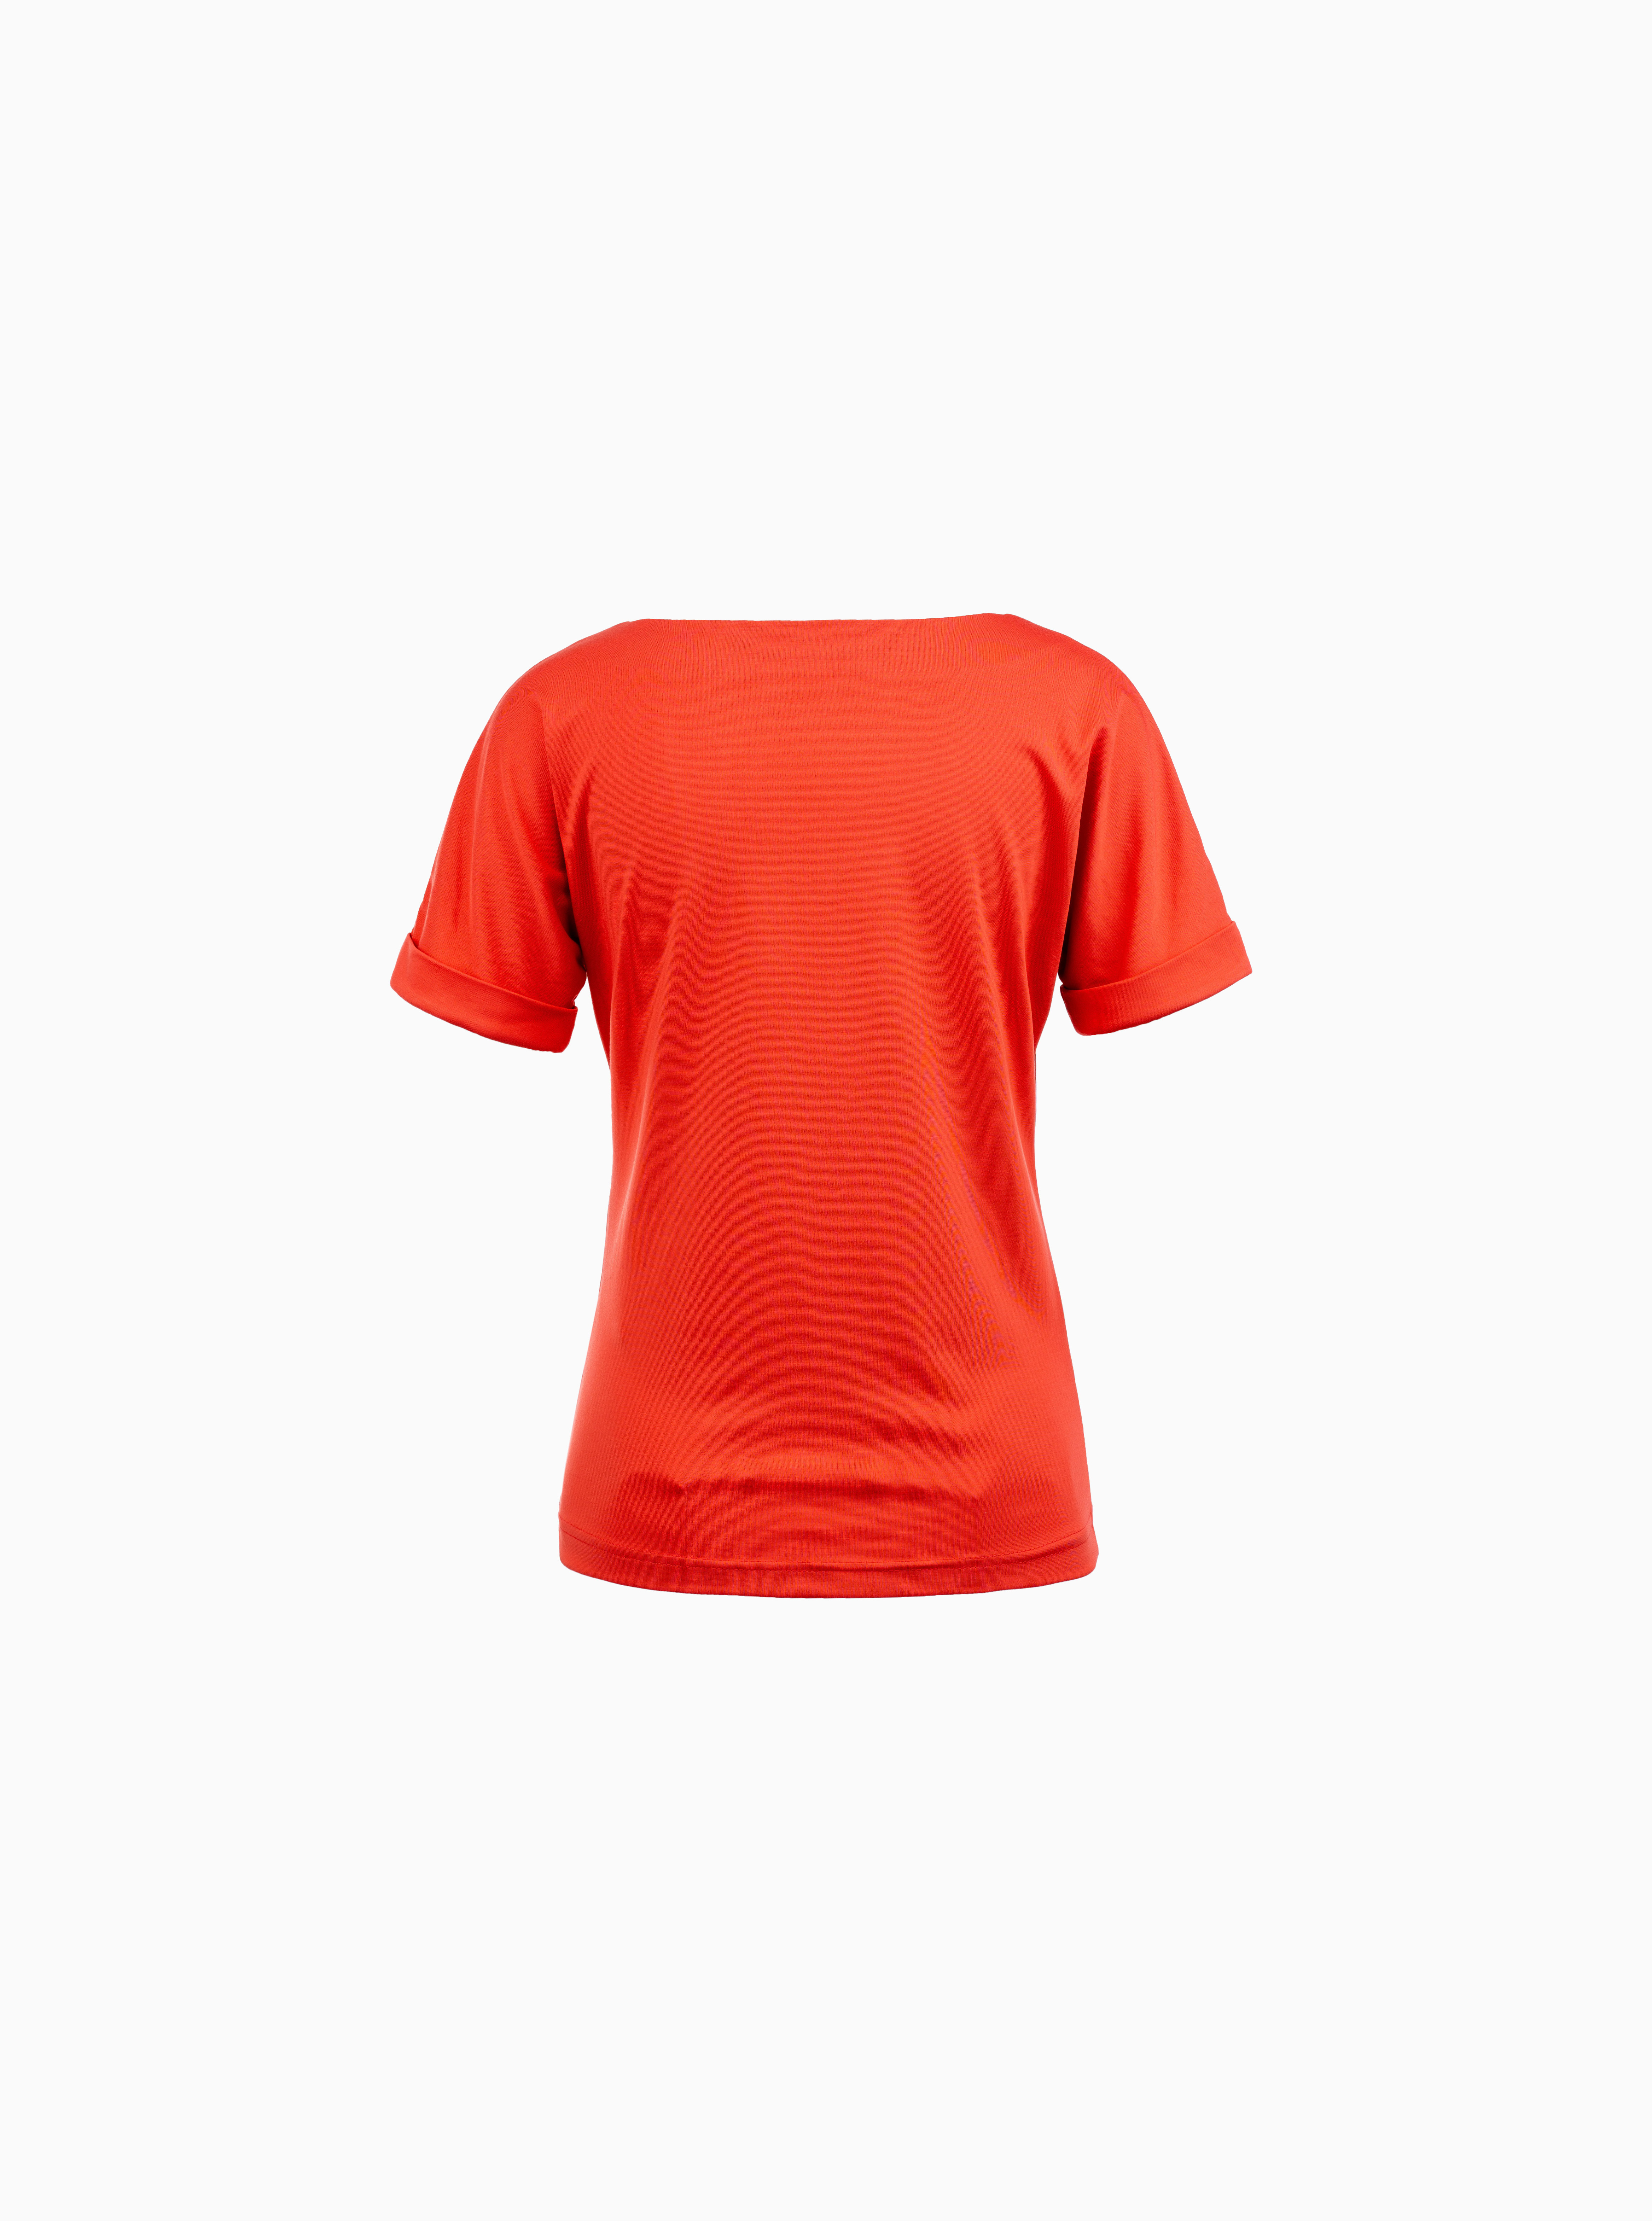 T-Shirt Orange mit Goldnieten-Detail